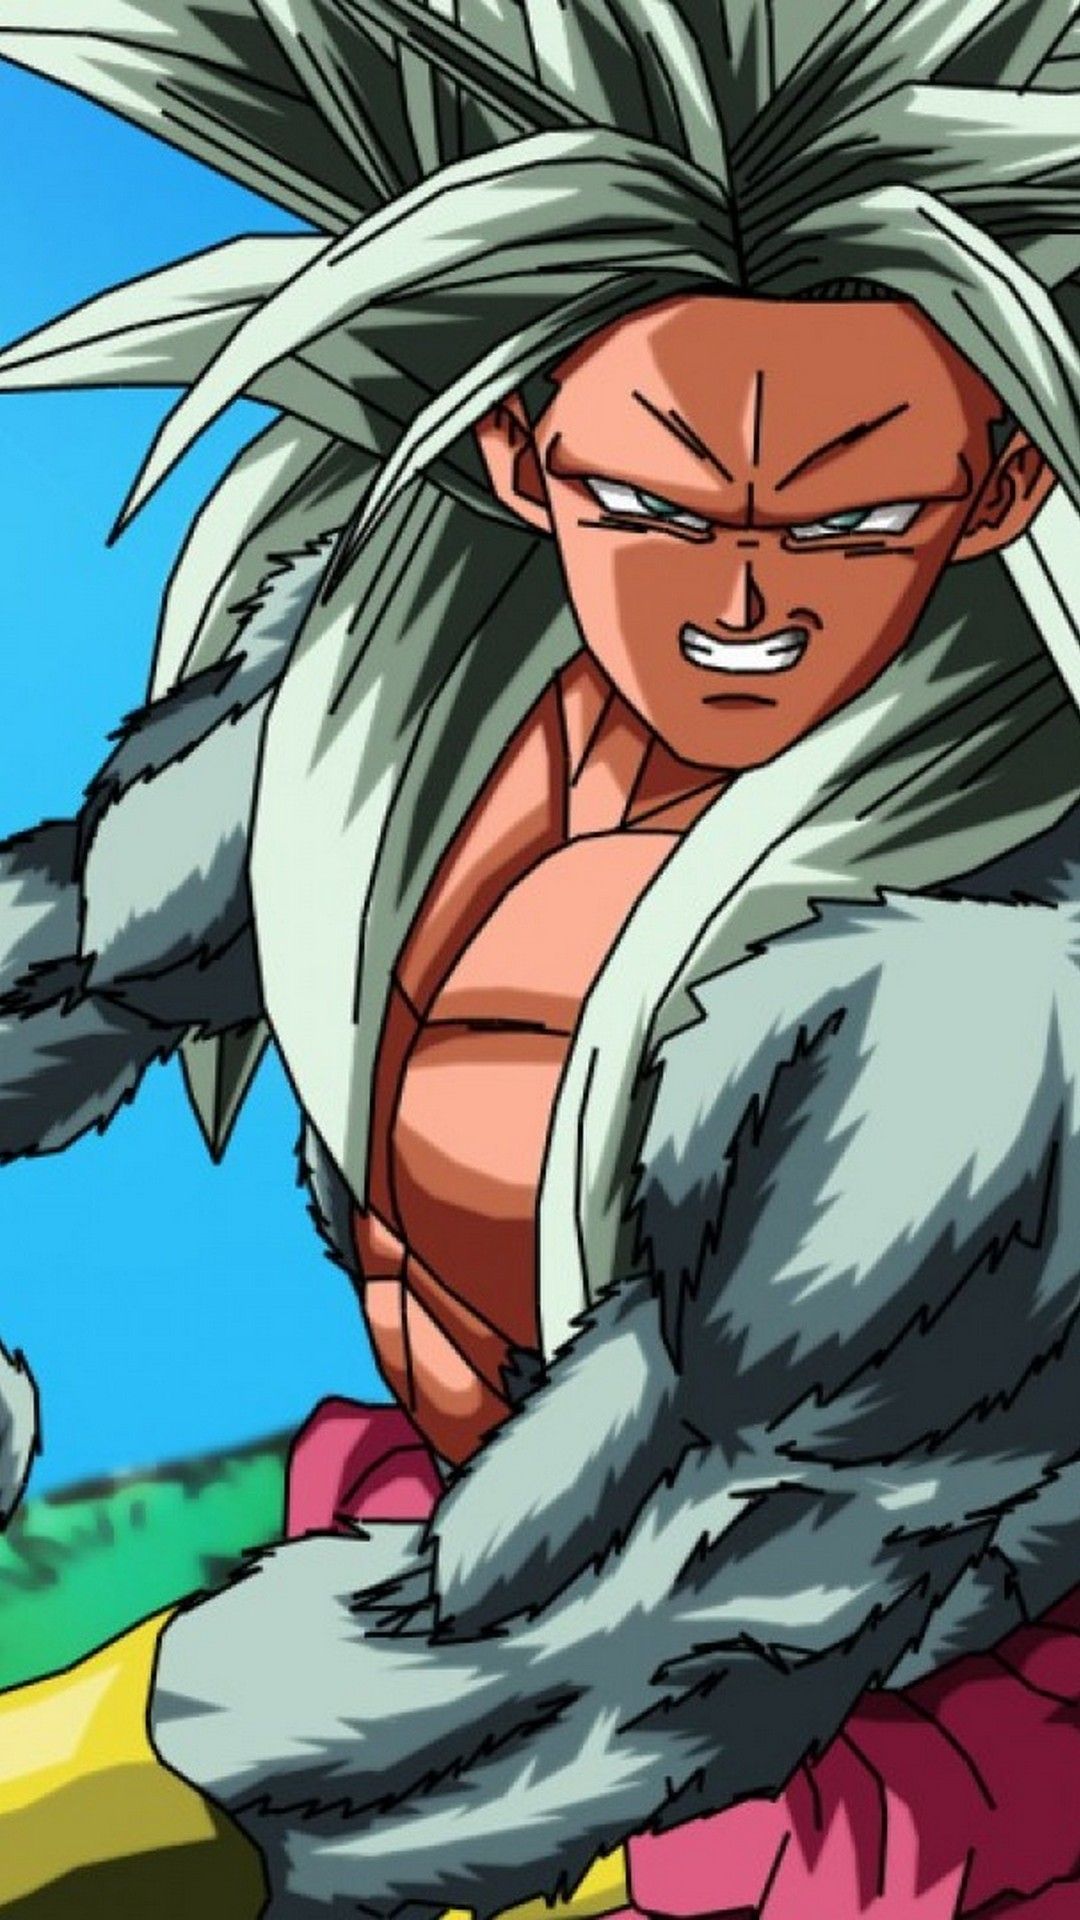 Goku Super Saiyan 5 Android Wallpaper Android Wallpaper